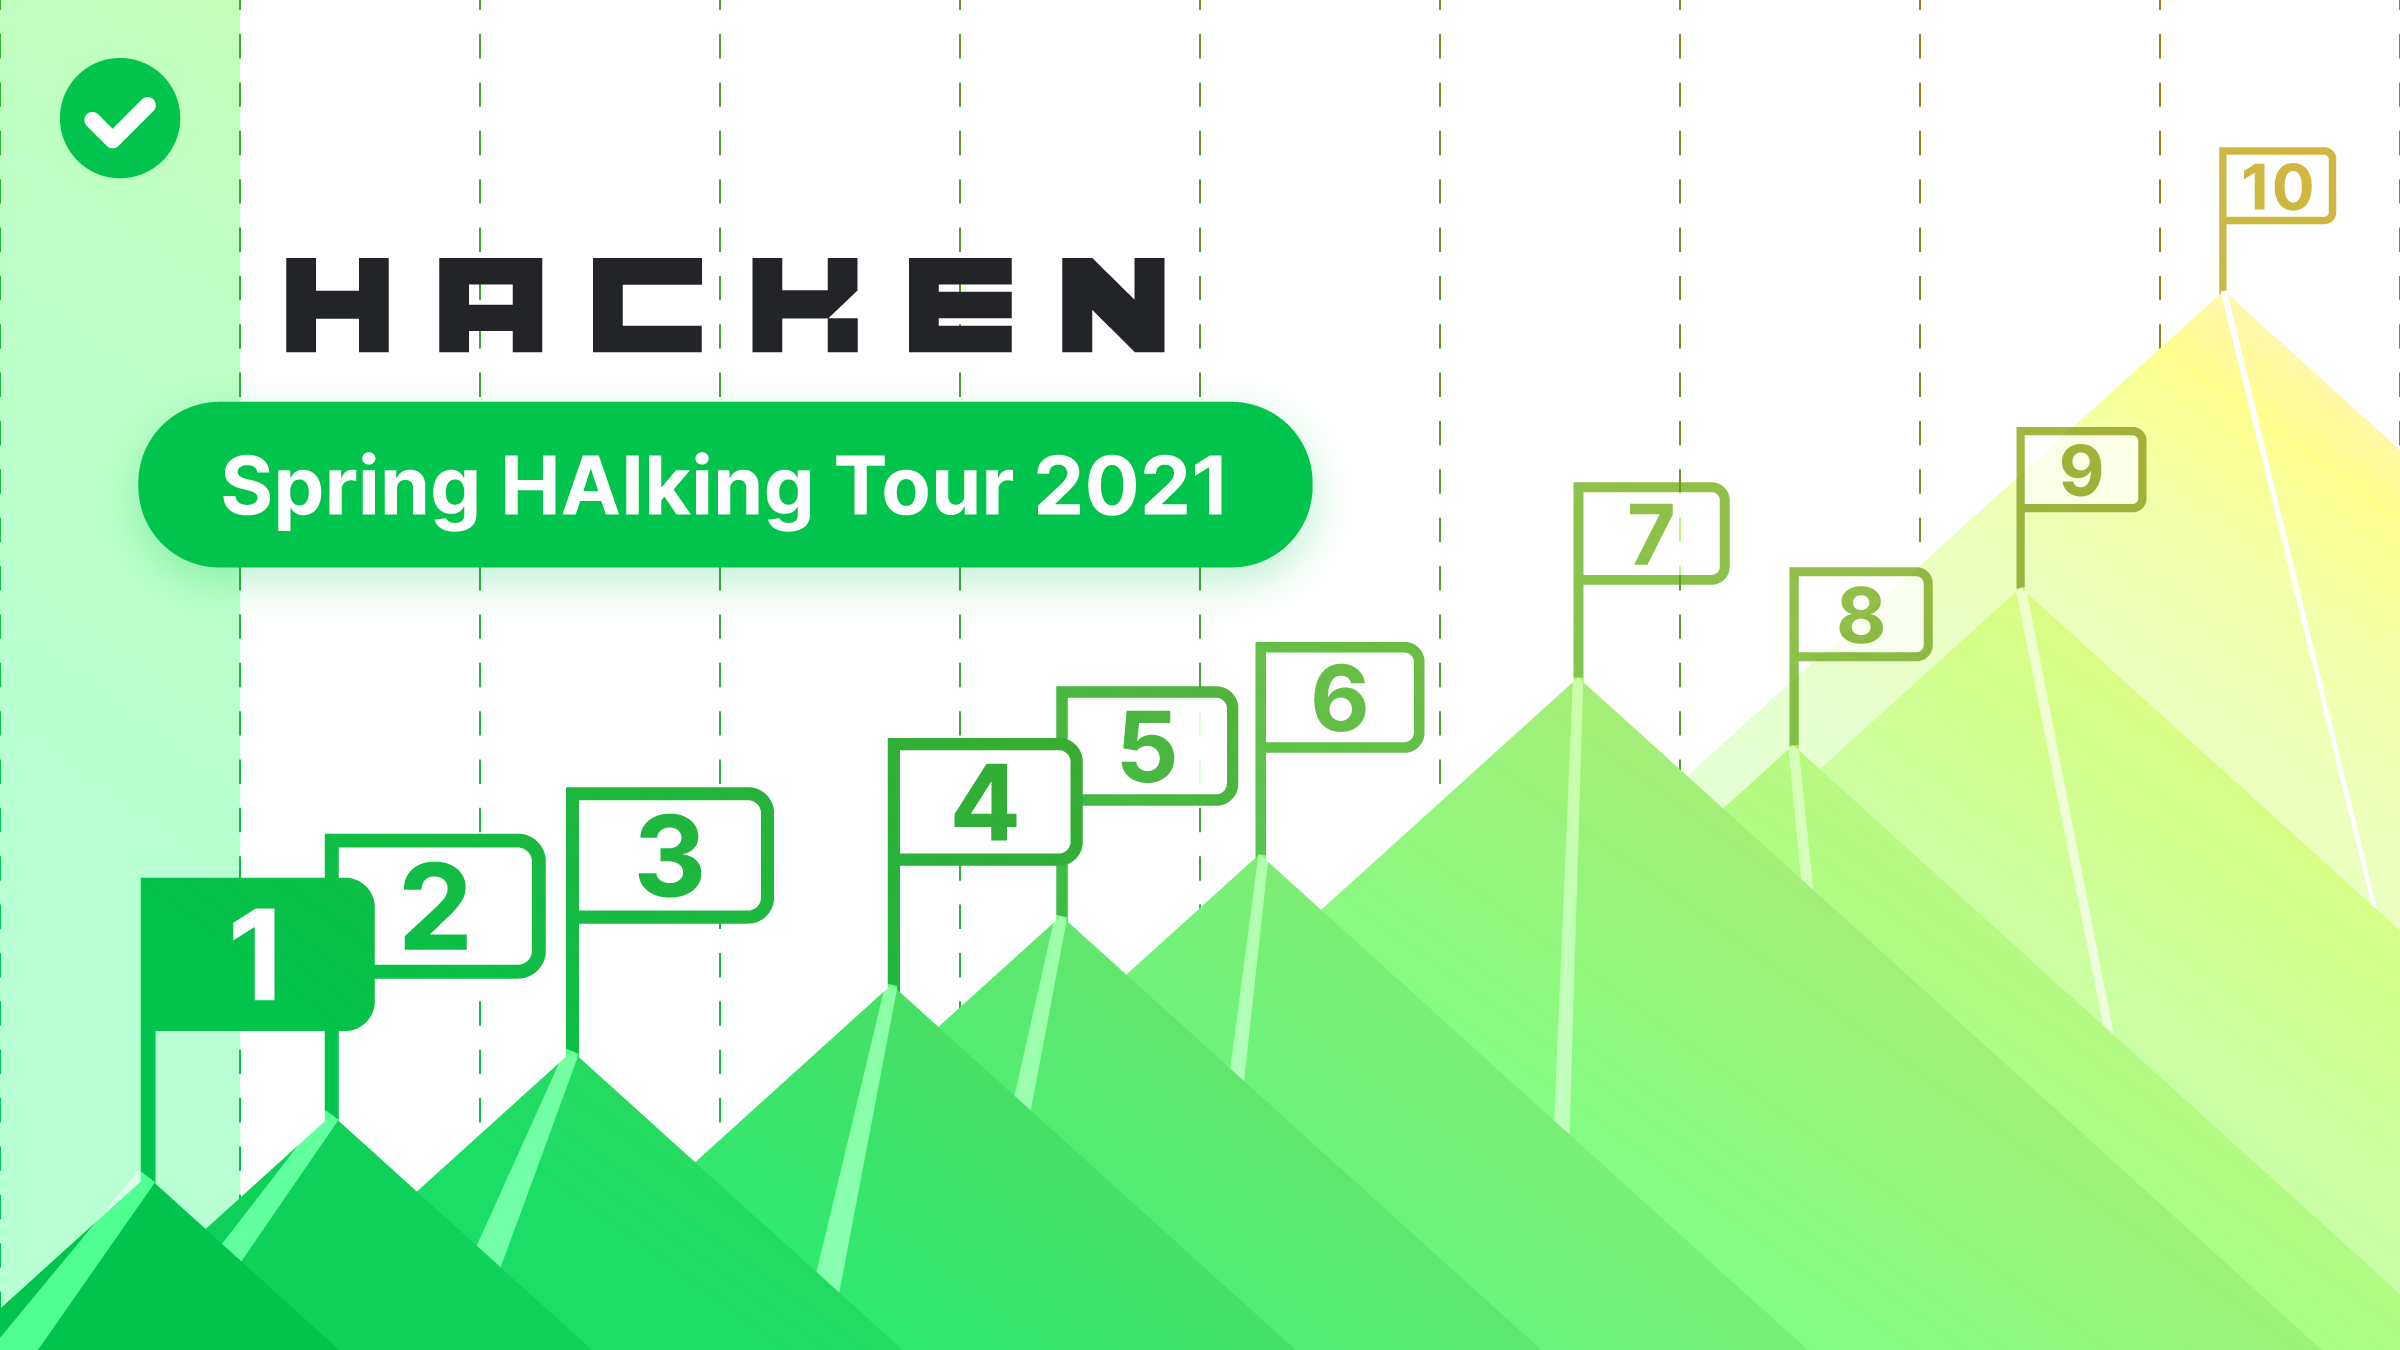 HACKEN Strategic Spring 2021 Goals